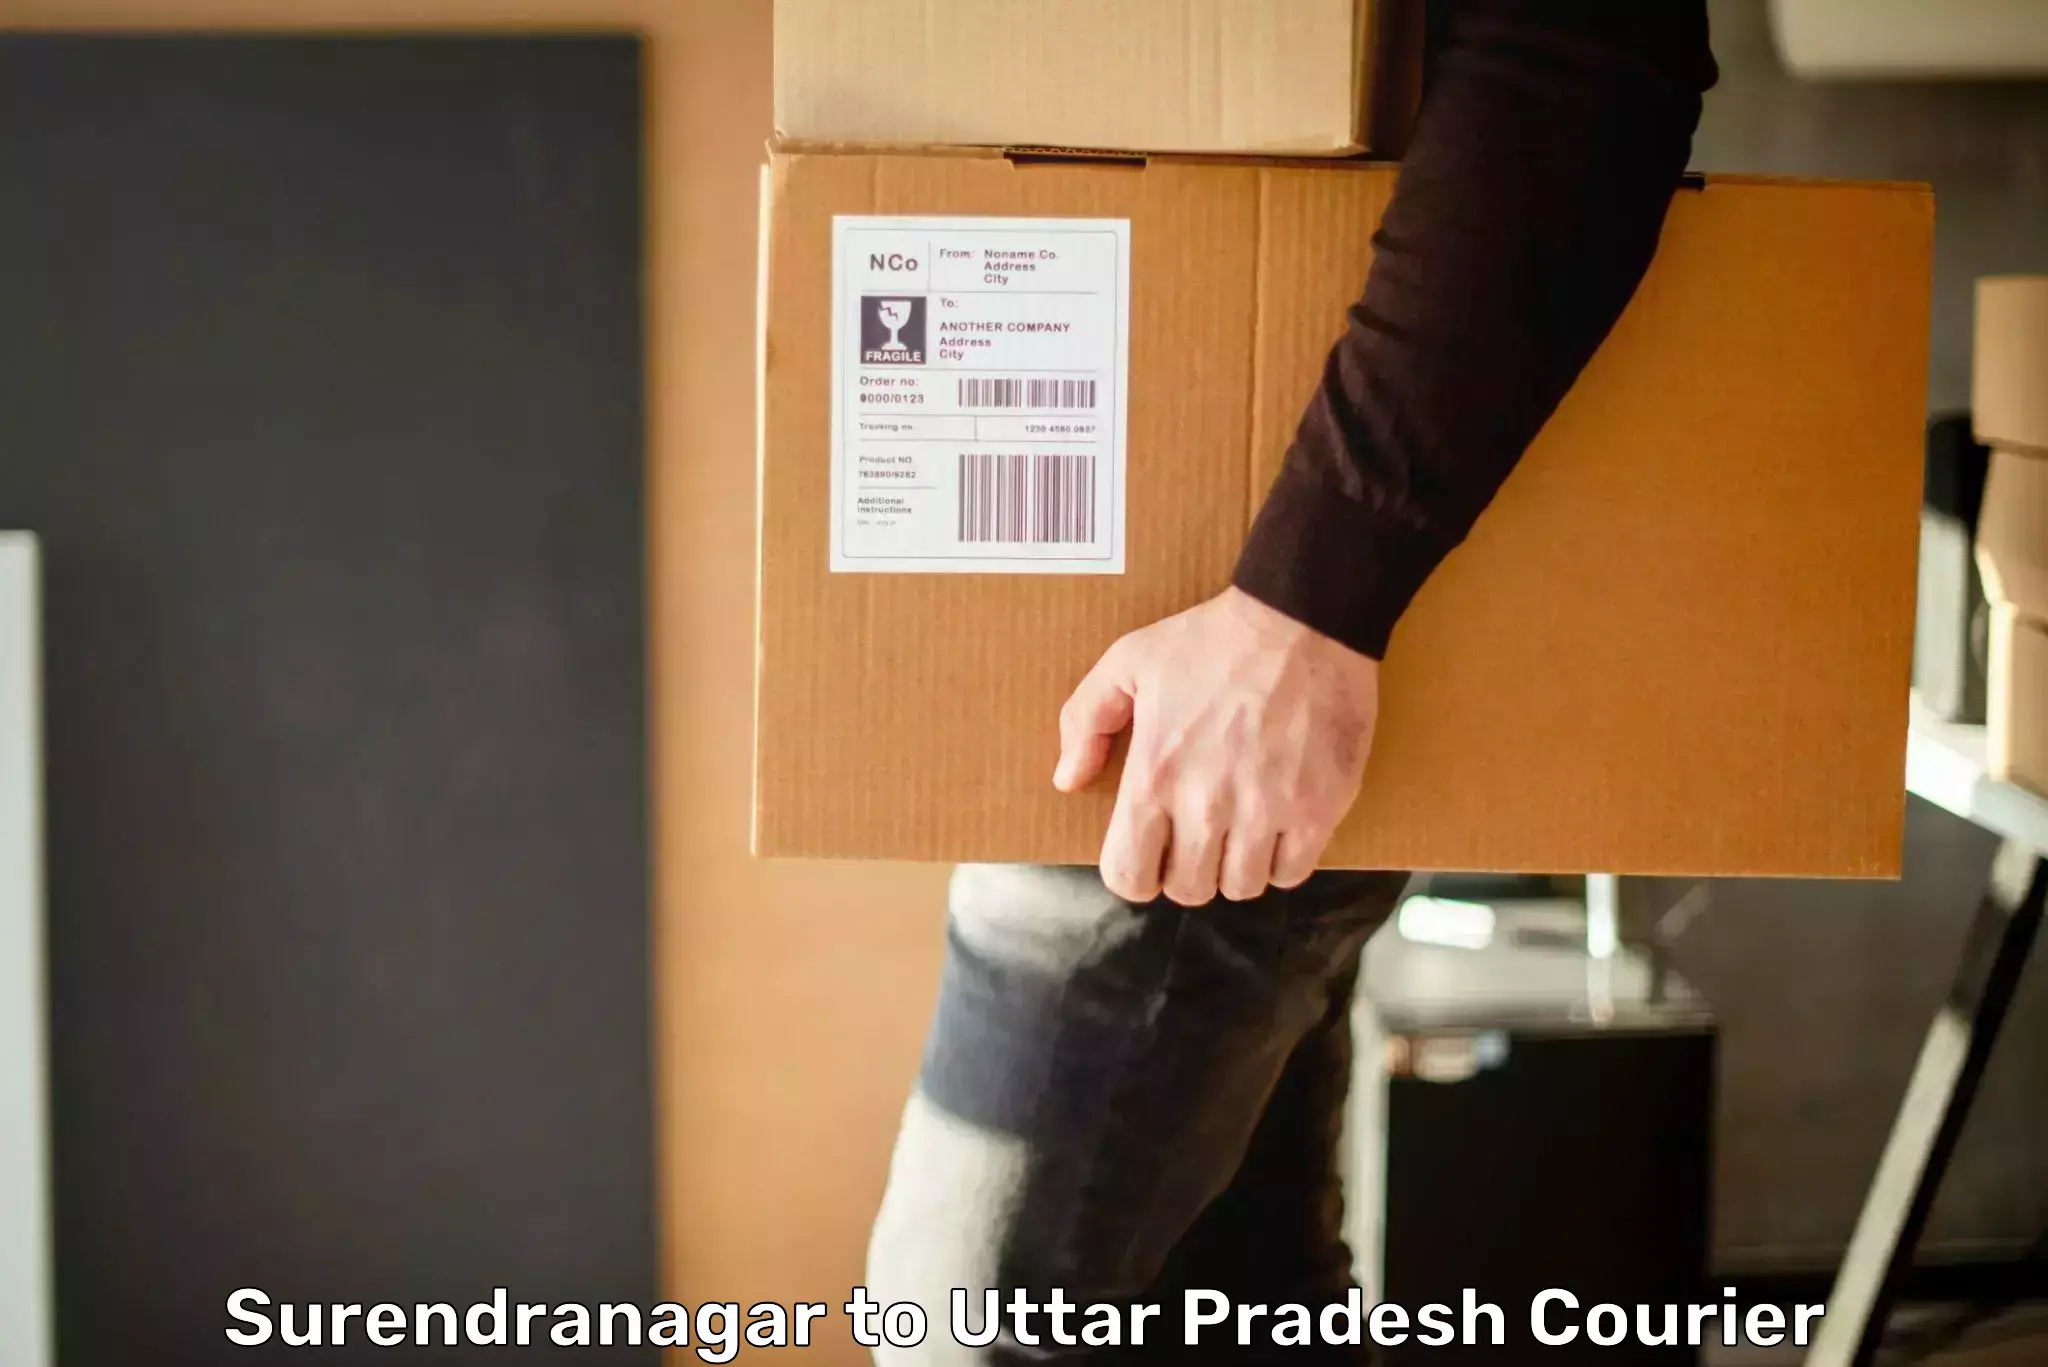 Reliable delivery network Surendranagar to Prayagraj